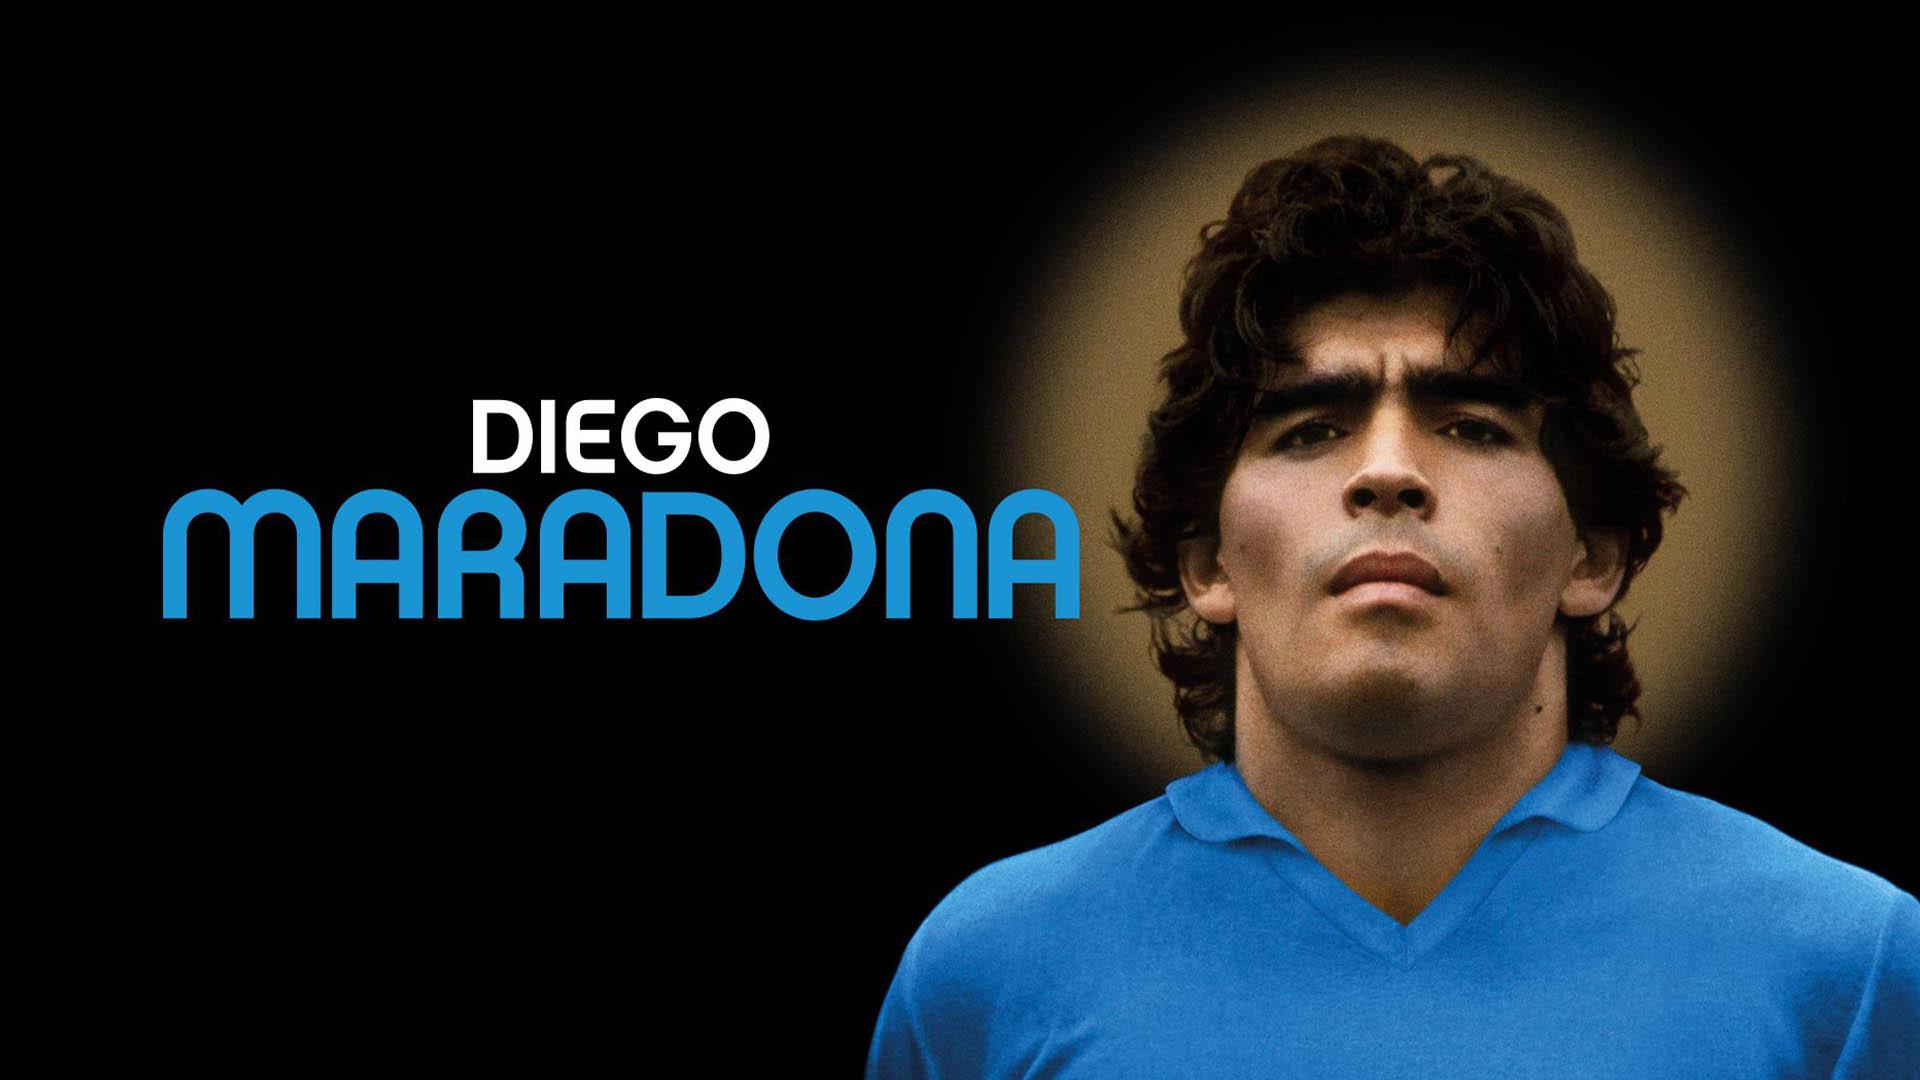 تصویری از دیگو مارادونا در فیلم Diego Maradona